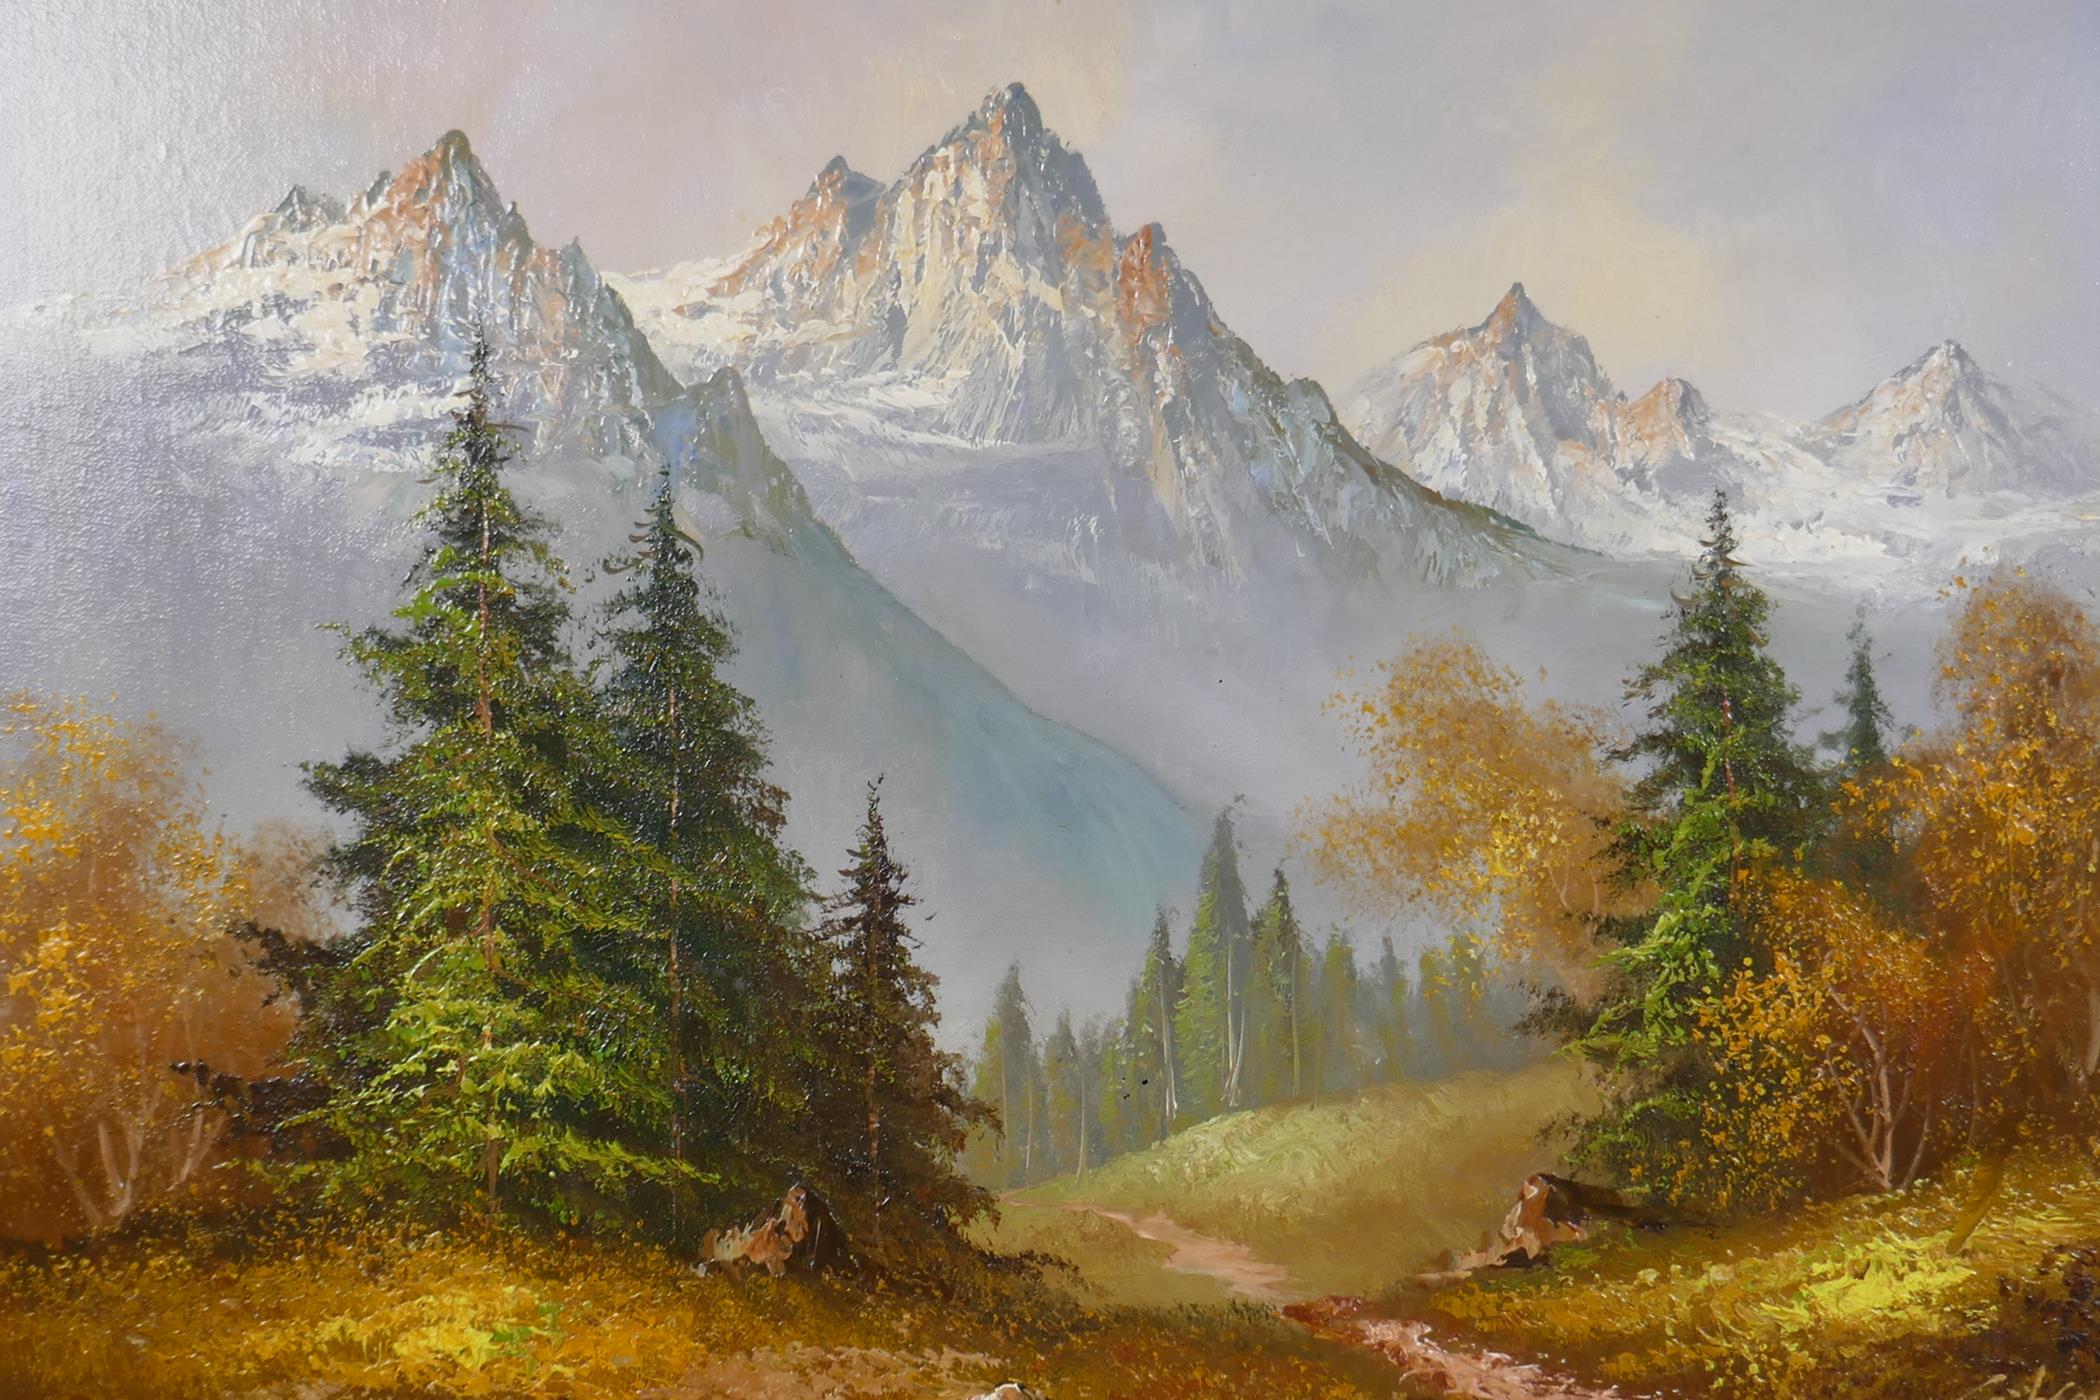 Gibson, Alpine landscape, oil on board. 24" x 20"